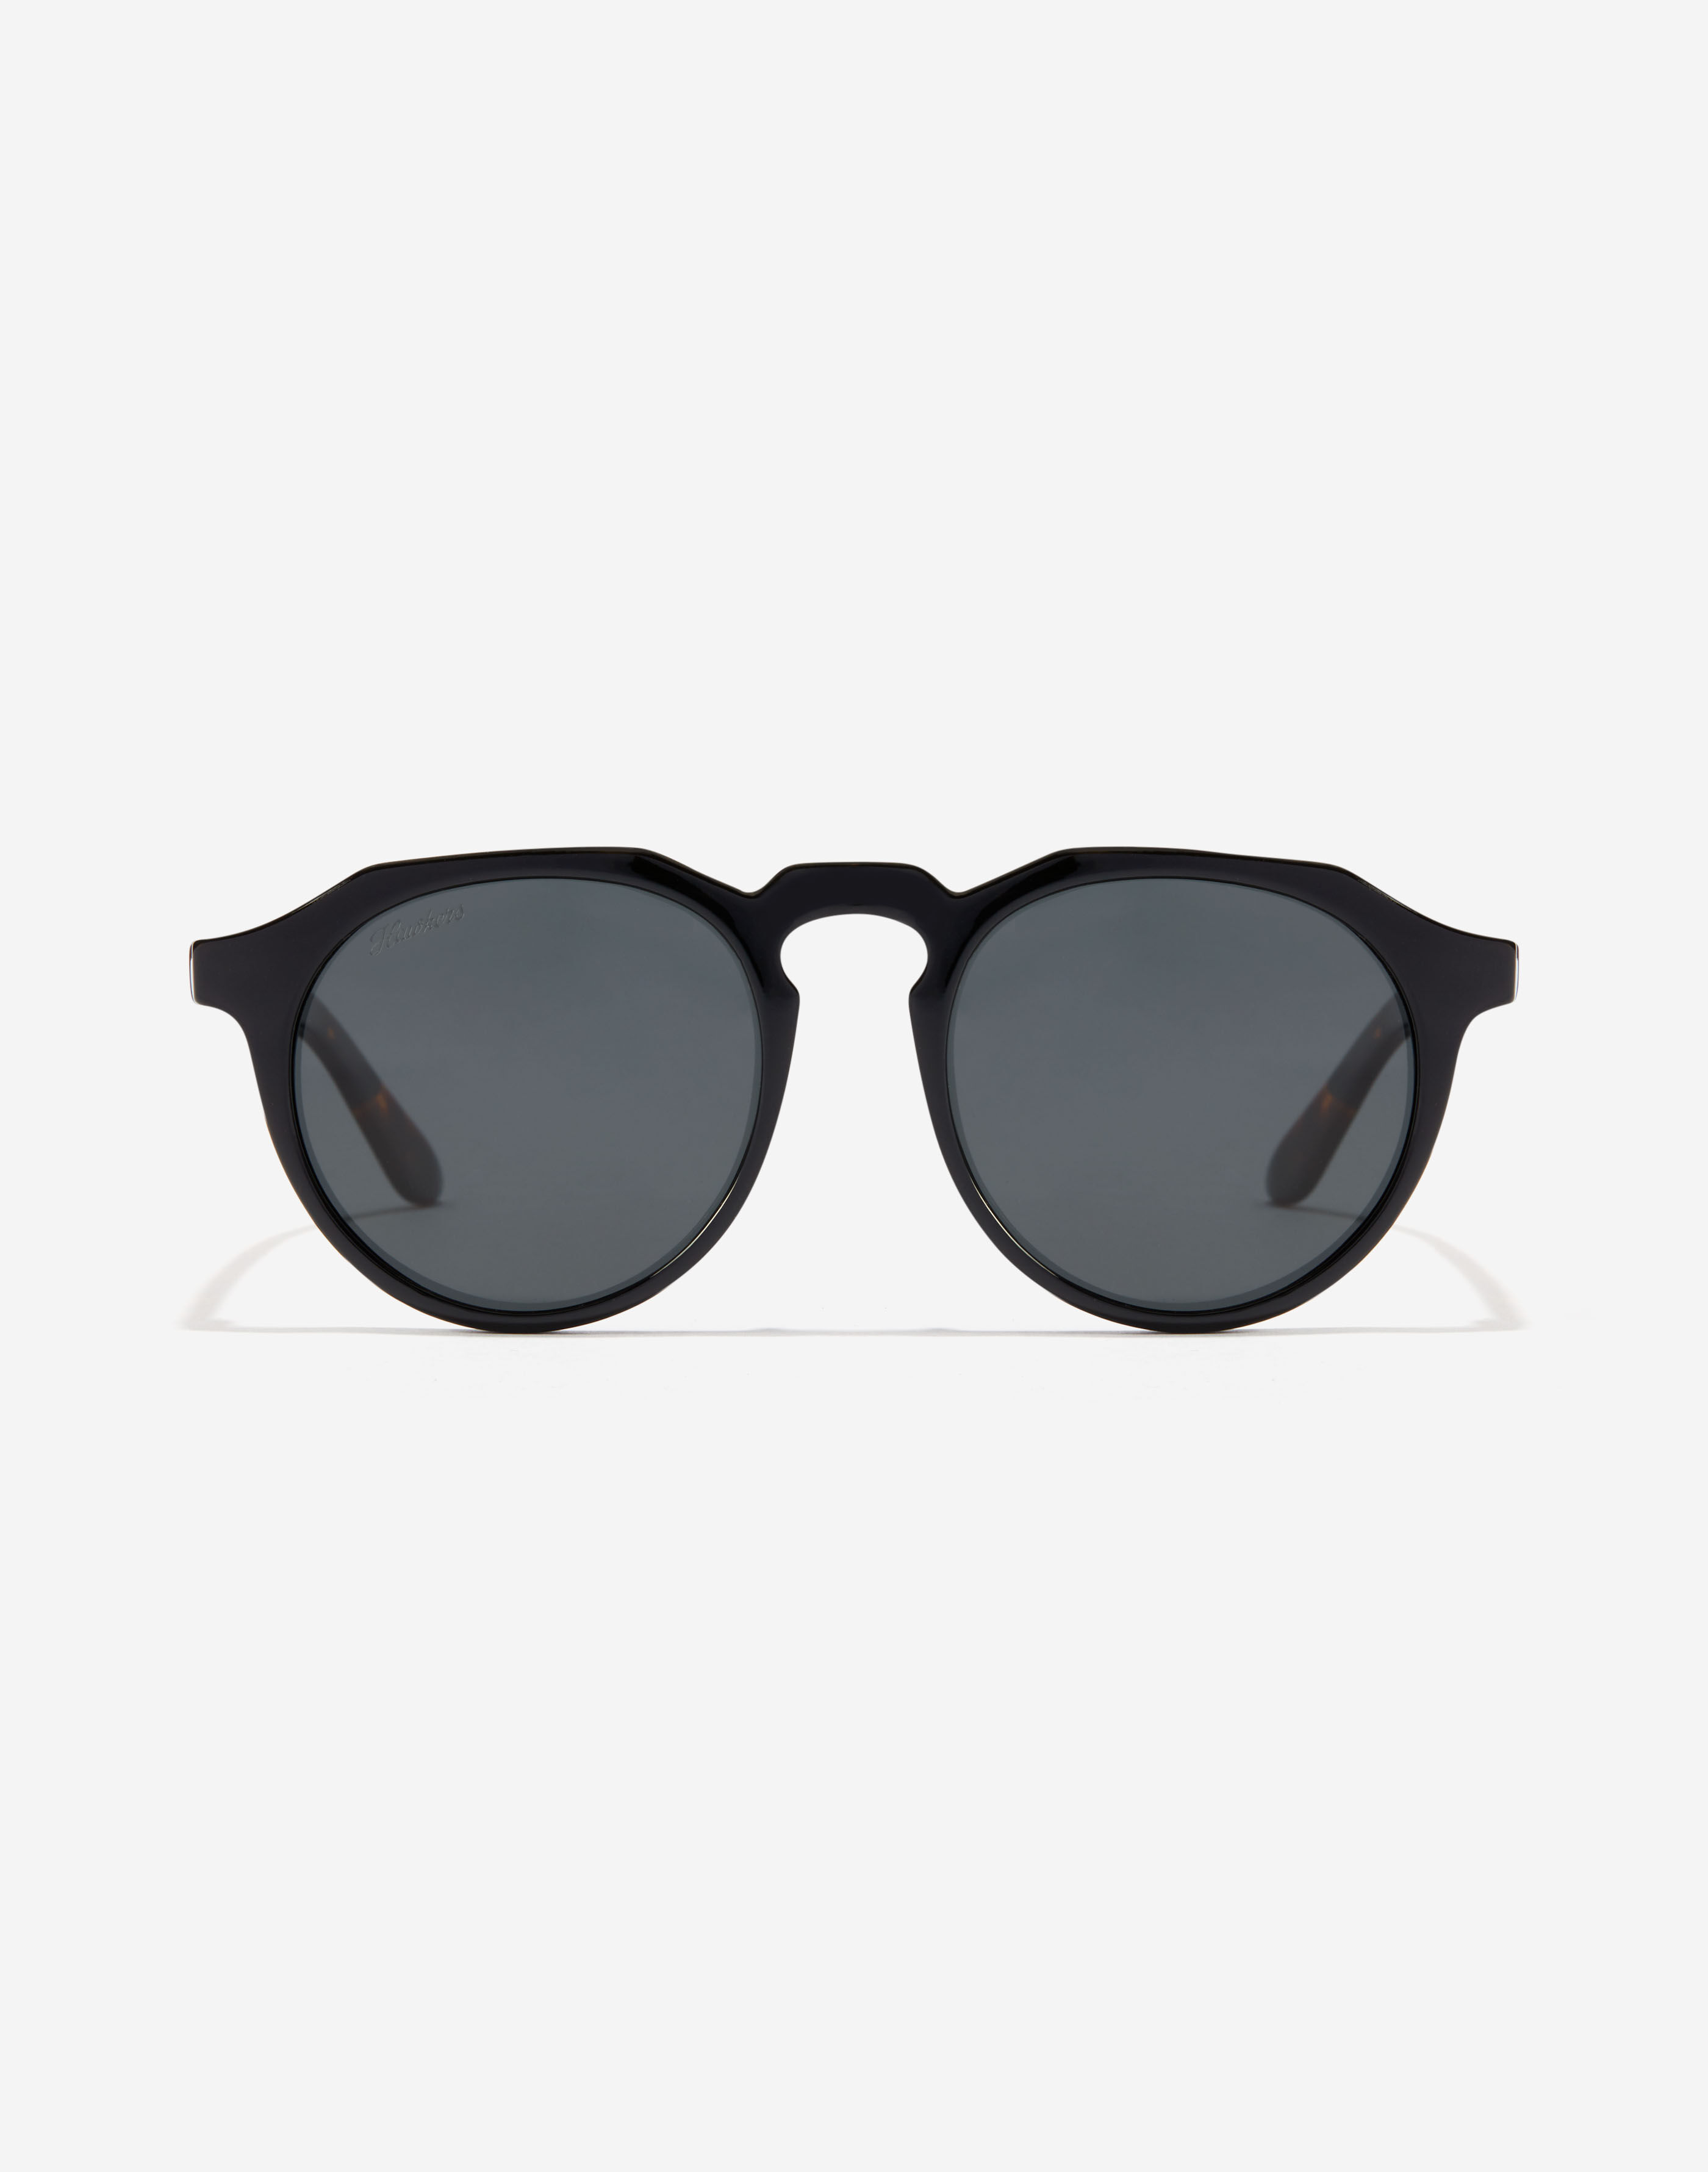 Pugs Sunglasses for Women for sale | eBay